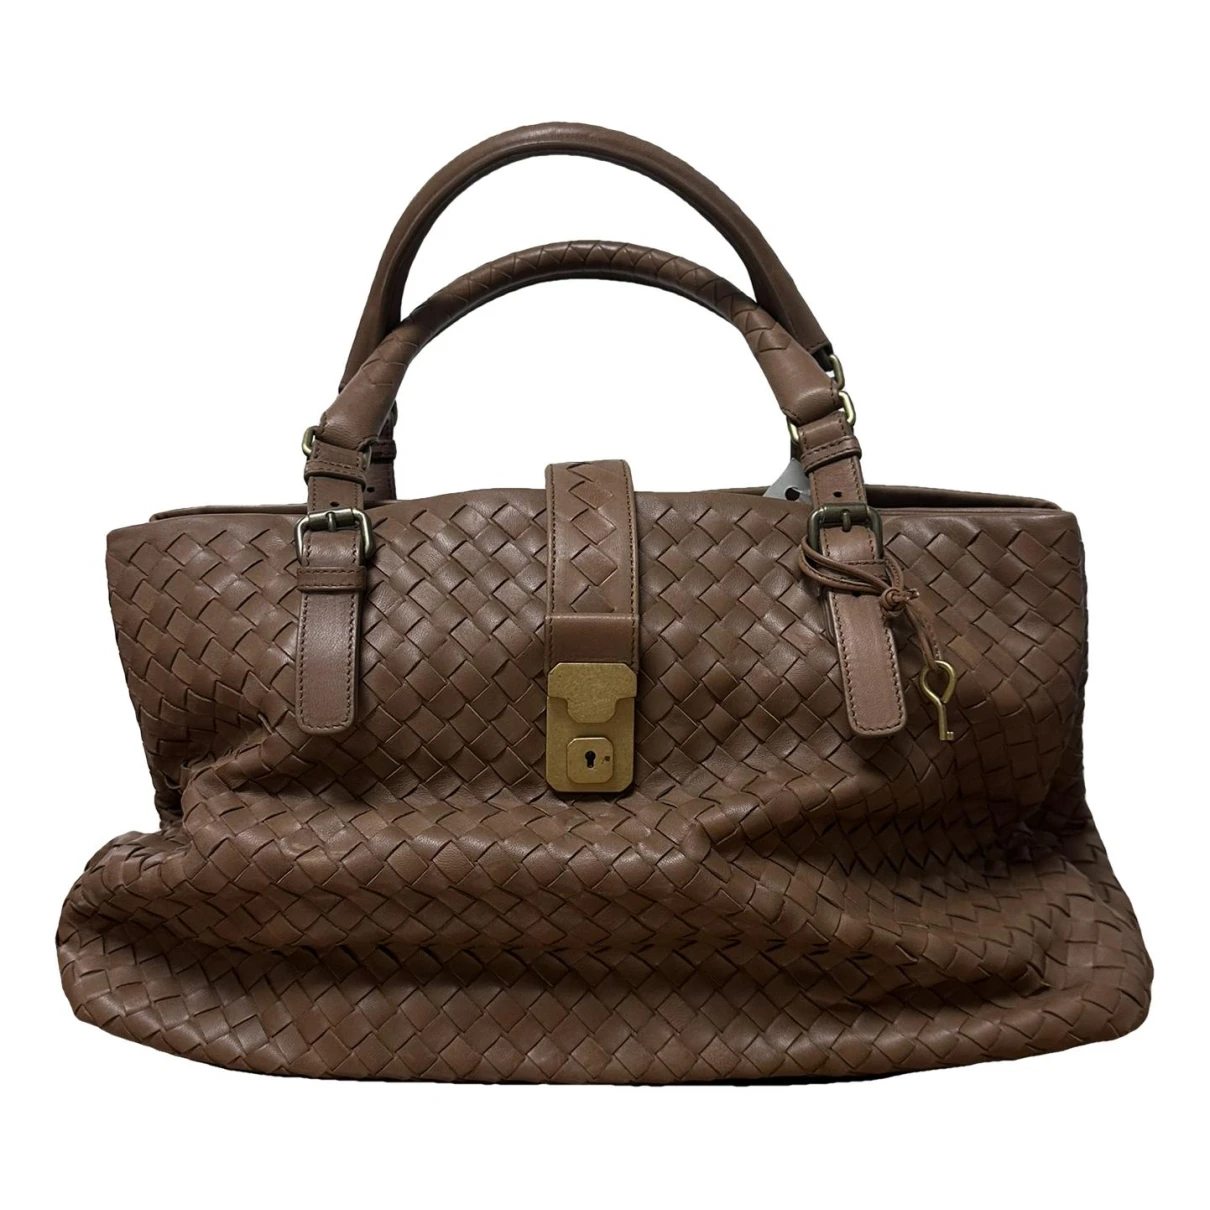 Pre-owned Bottega Veneta Roma Leather Handbag In Brown